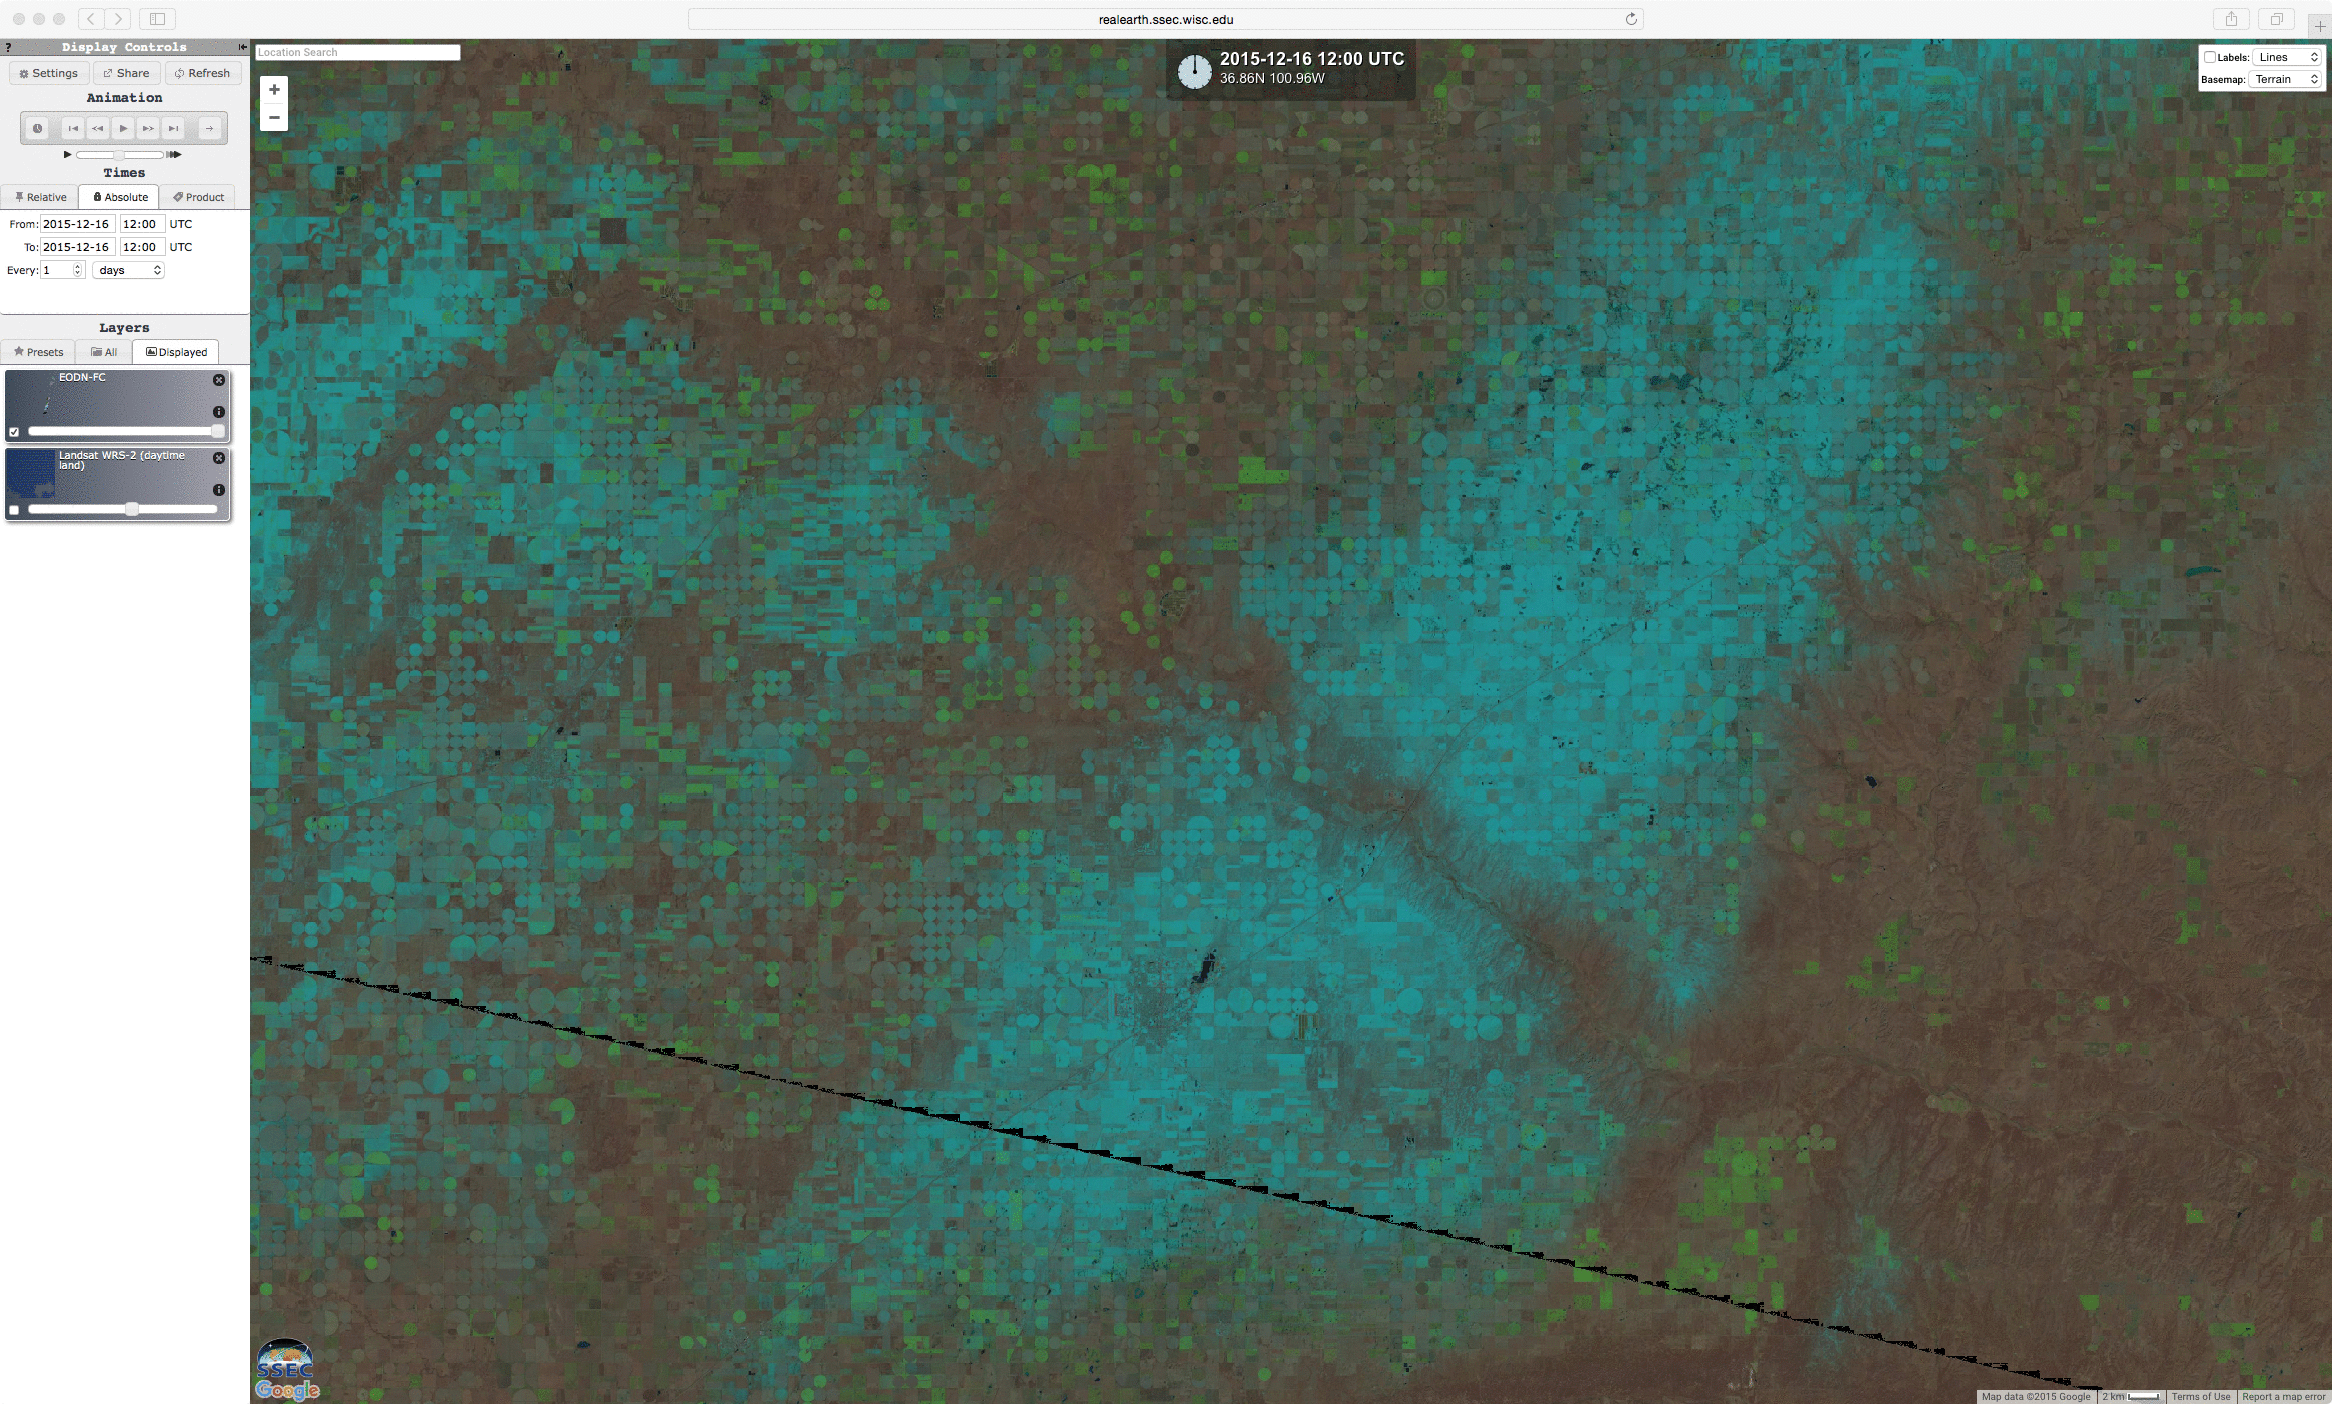 Landsat-8 False-color RGB image, with Google maps background [click to enlarge]